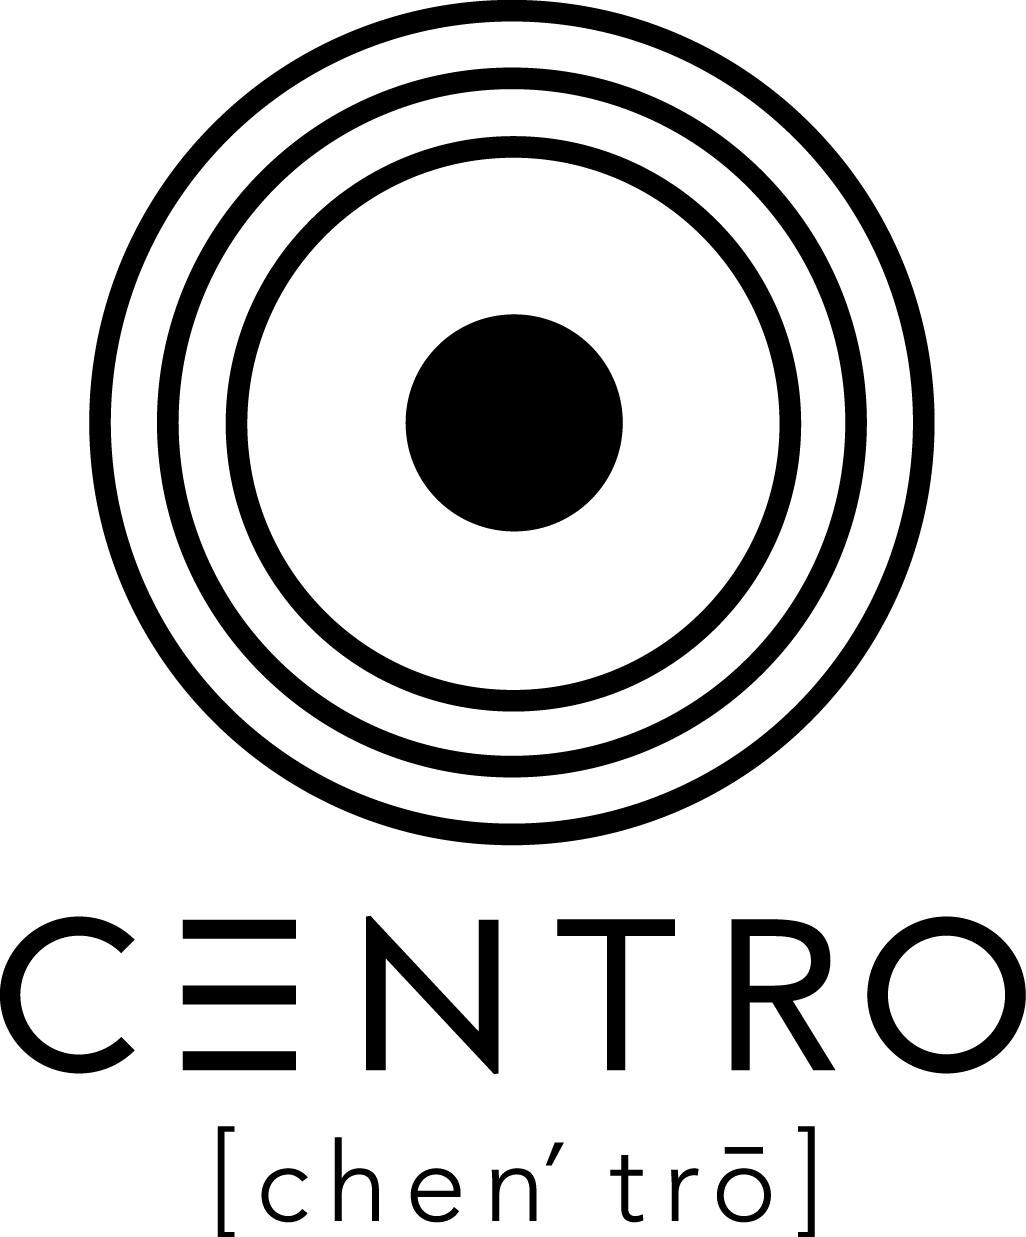 Centro Logo - Centro